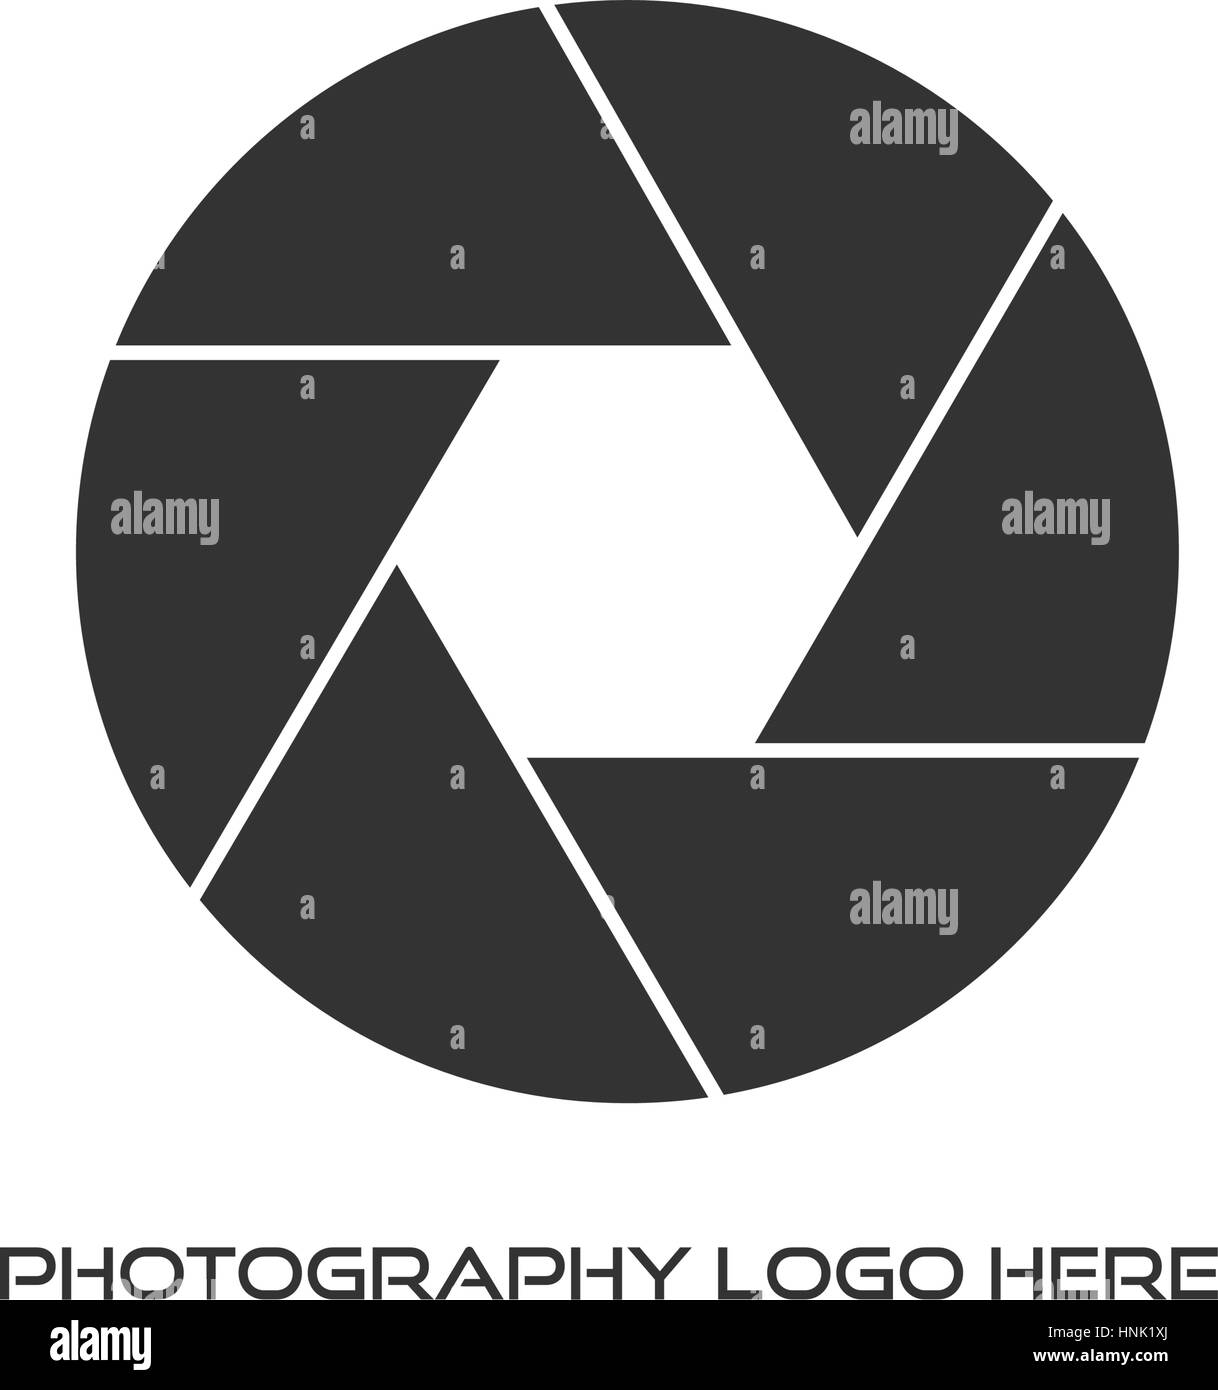 Fotograf / Fotografie Logo Design Stock Vektor